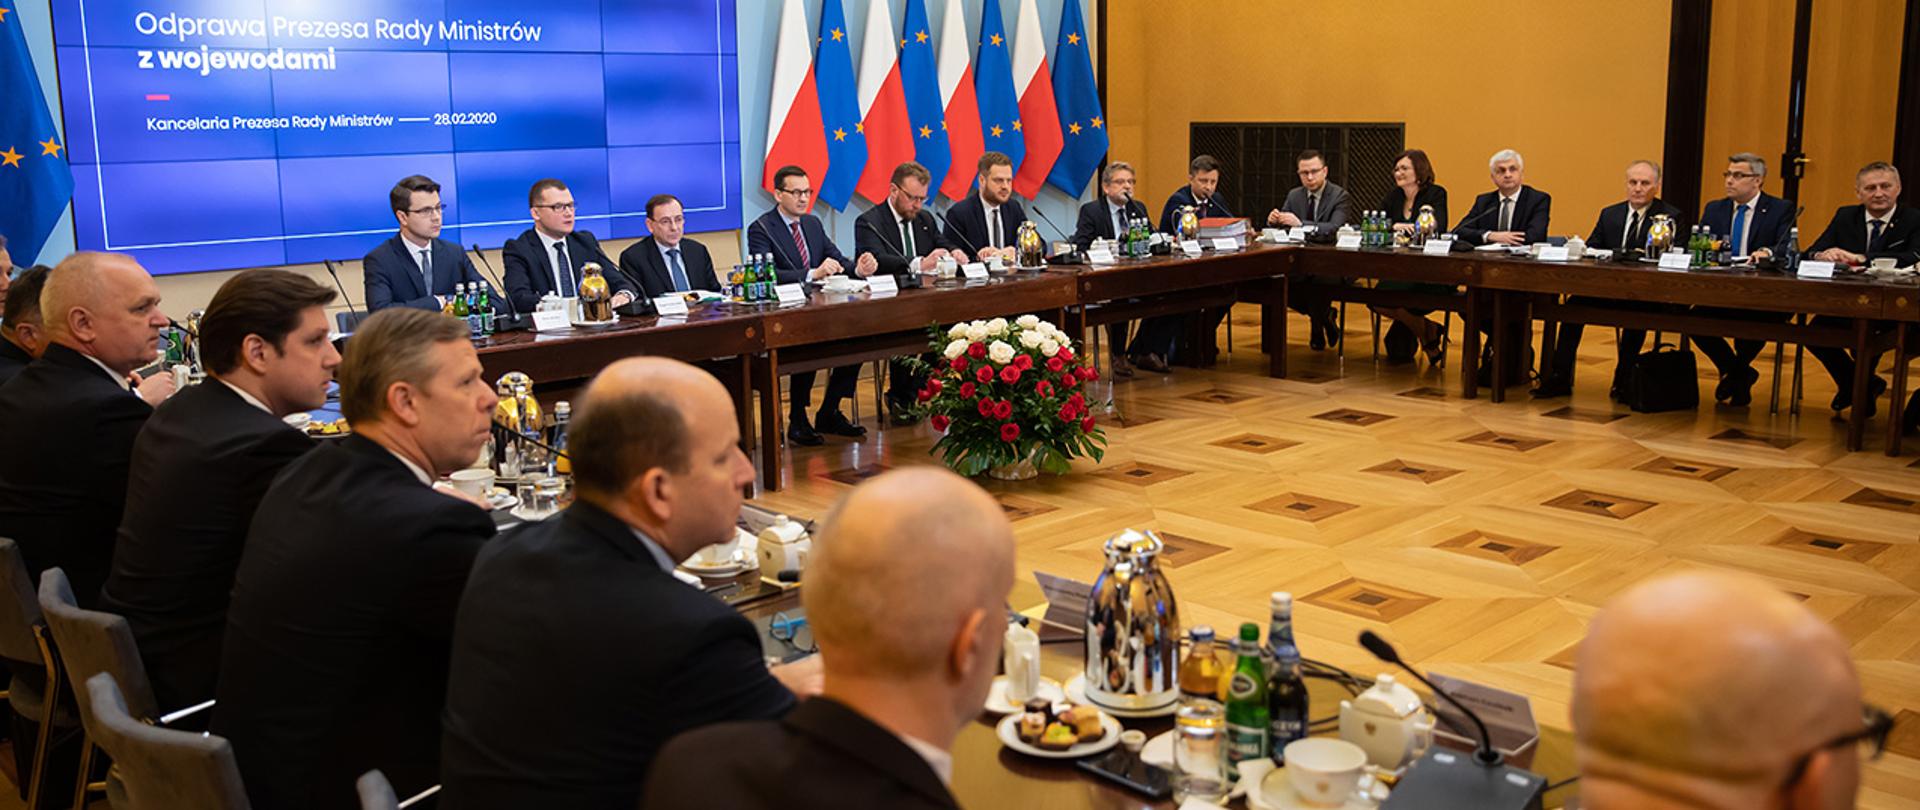 Na zdjęciu widać siedzących przy stole w trakcie litery U m.in.premiera Mateusza Morawieckiego, ministra Mariusza Kamińskiego, ministra zdrowia Łukasza Szumowskiego, wiceministra Pawła Szefernakera i wojewodów.